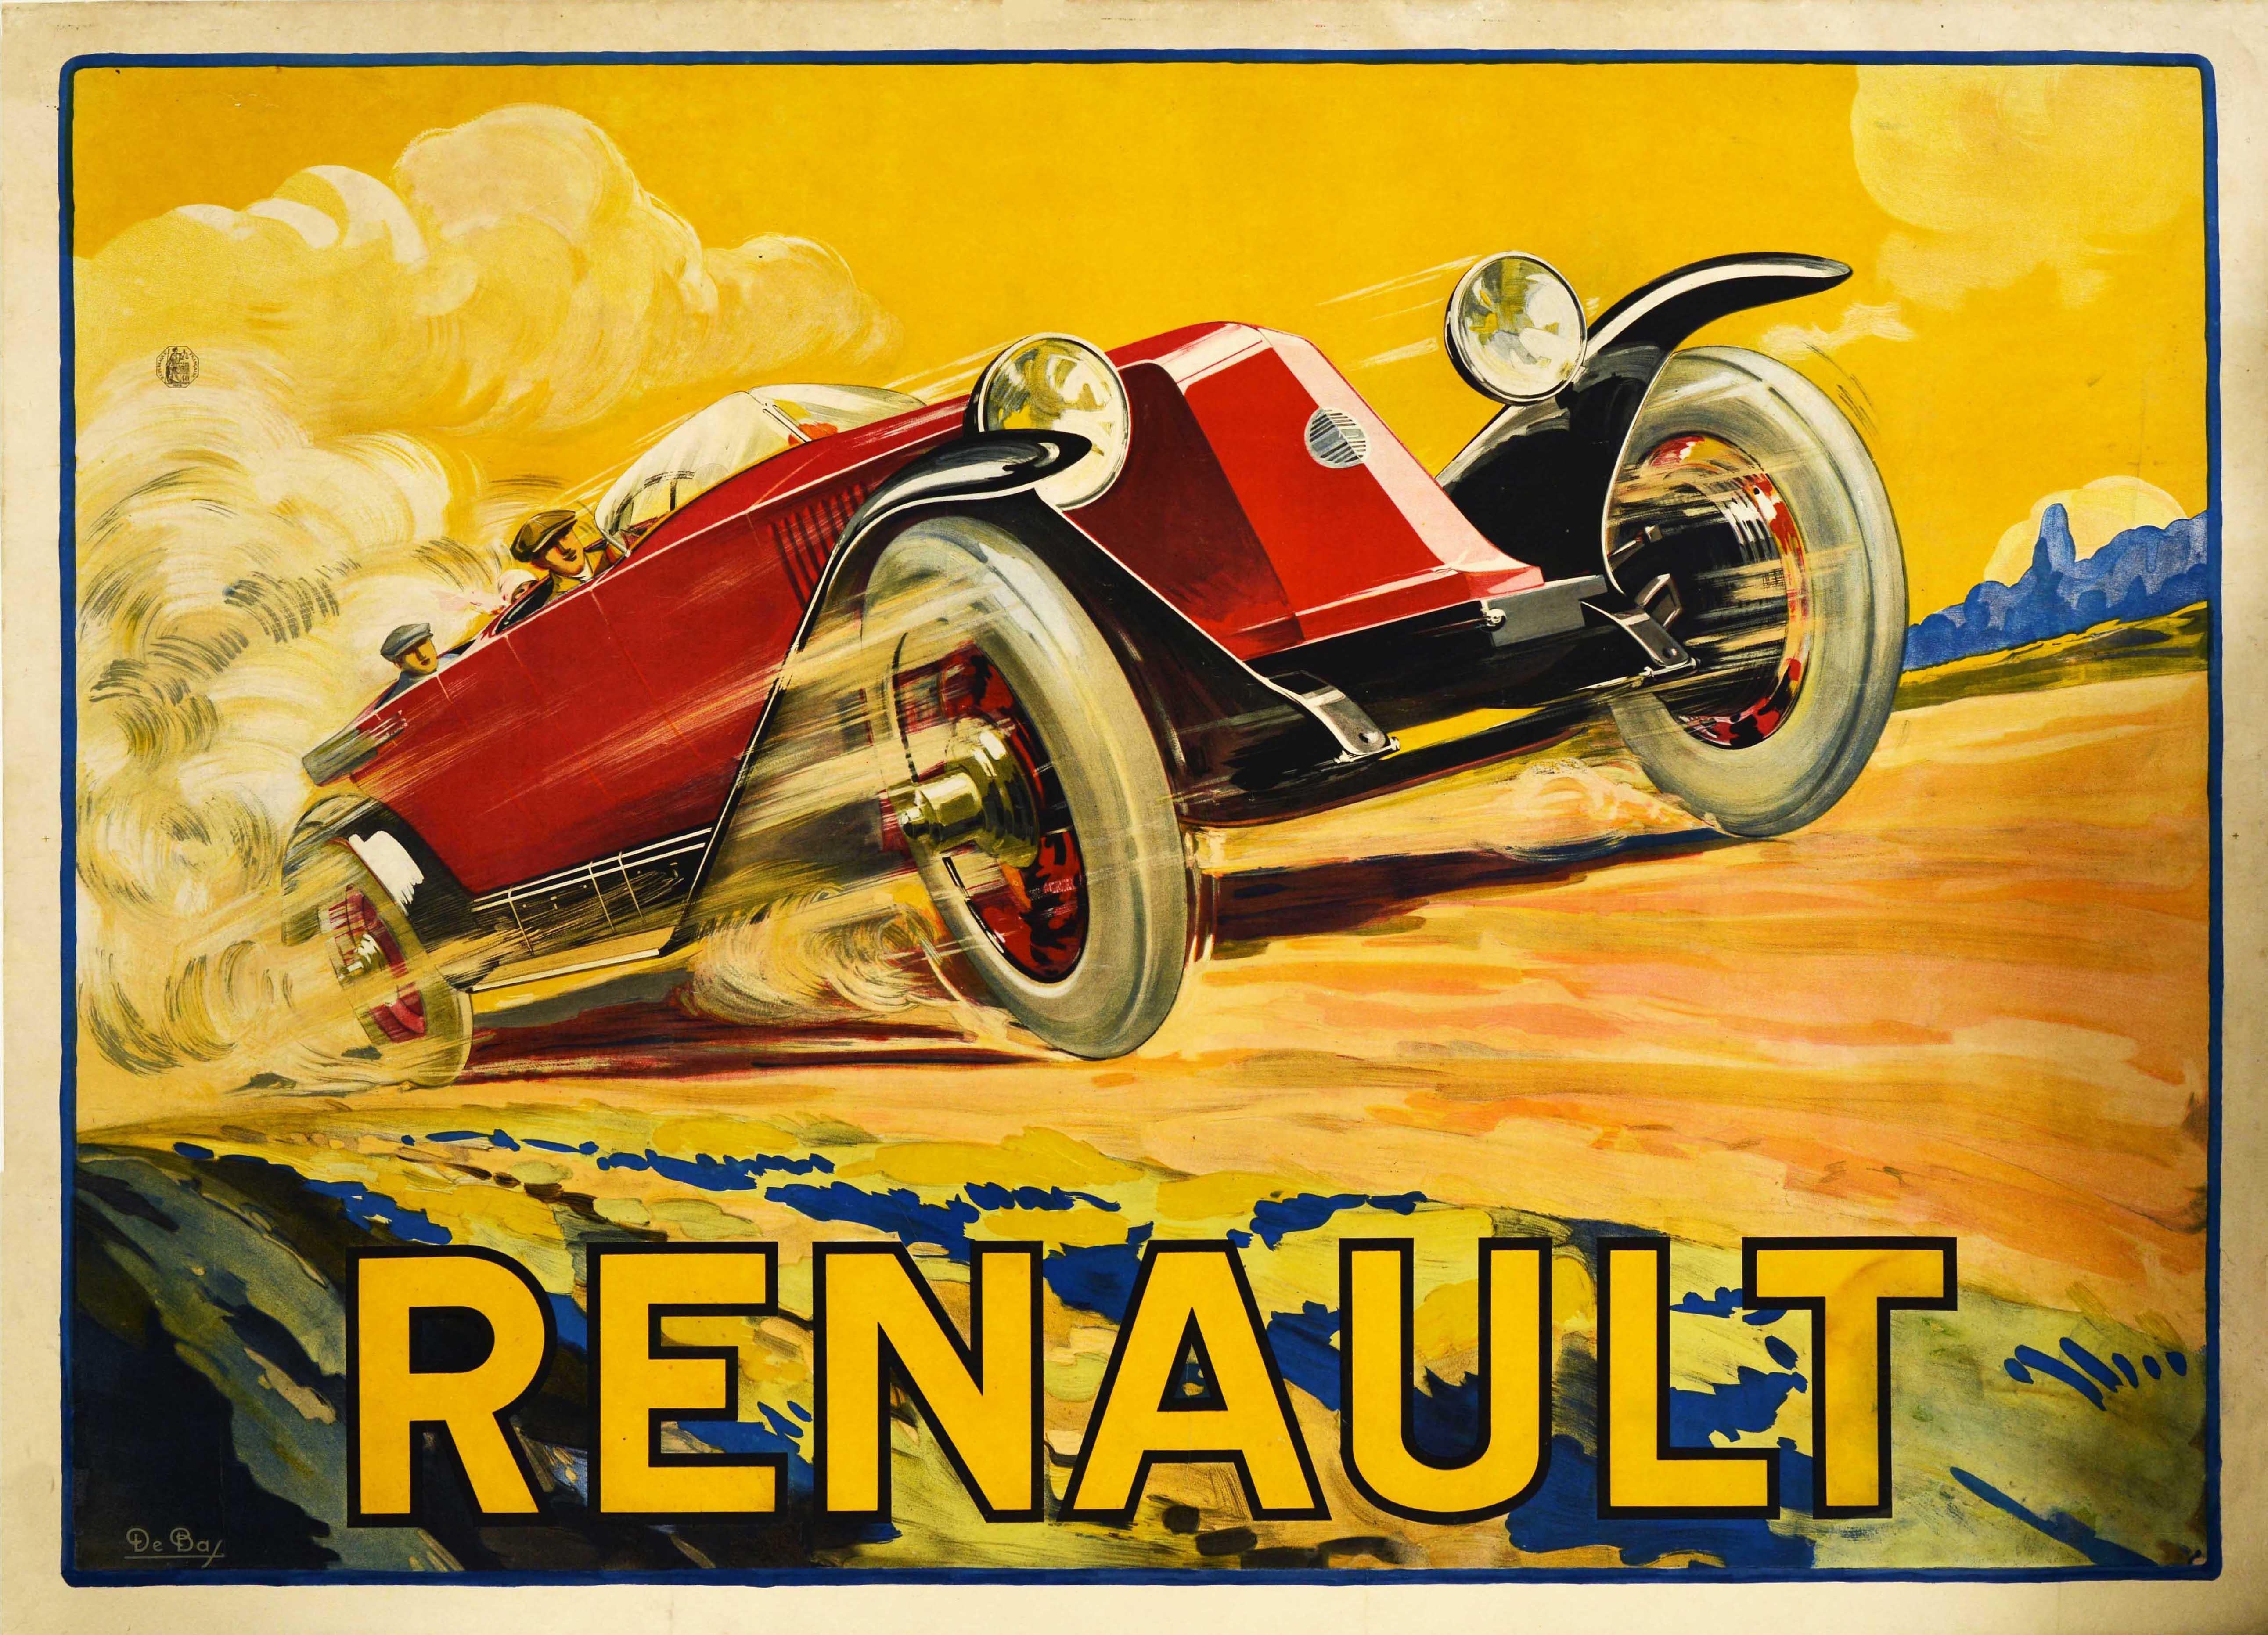  Original Antique Advertising Poster Renault Type 45 Classic Car Model Auto Art